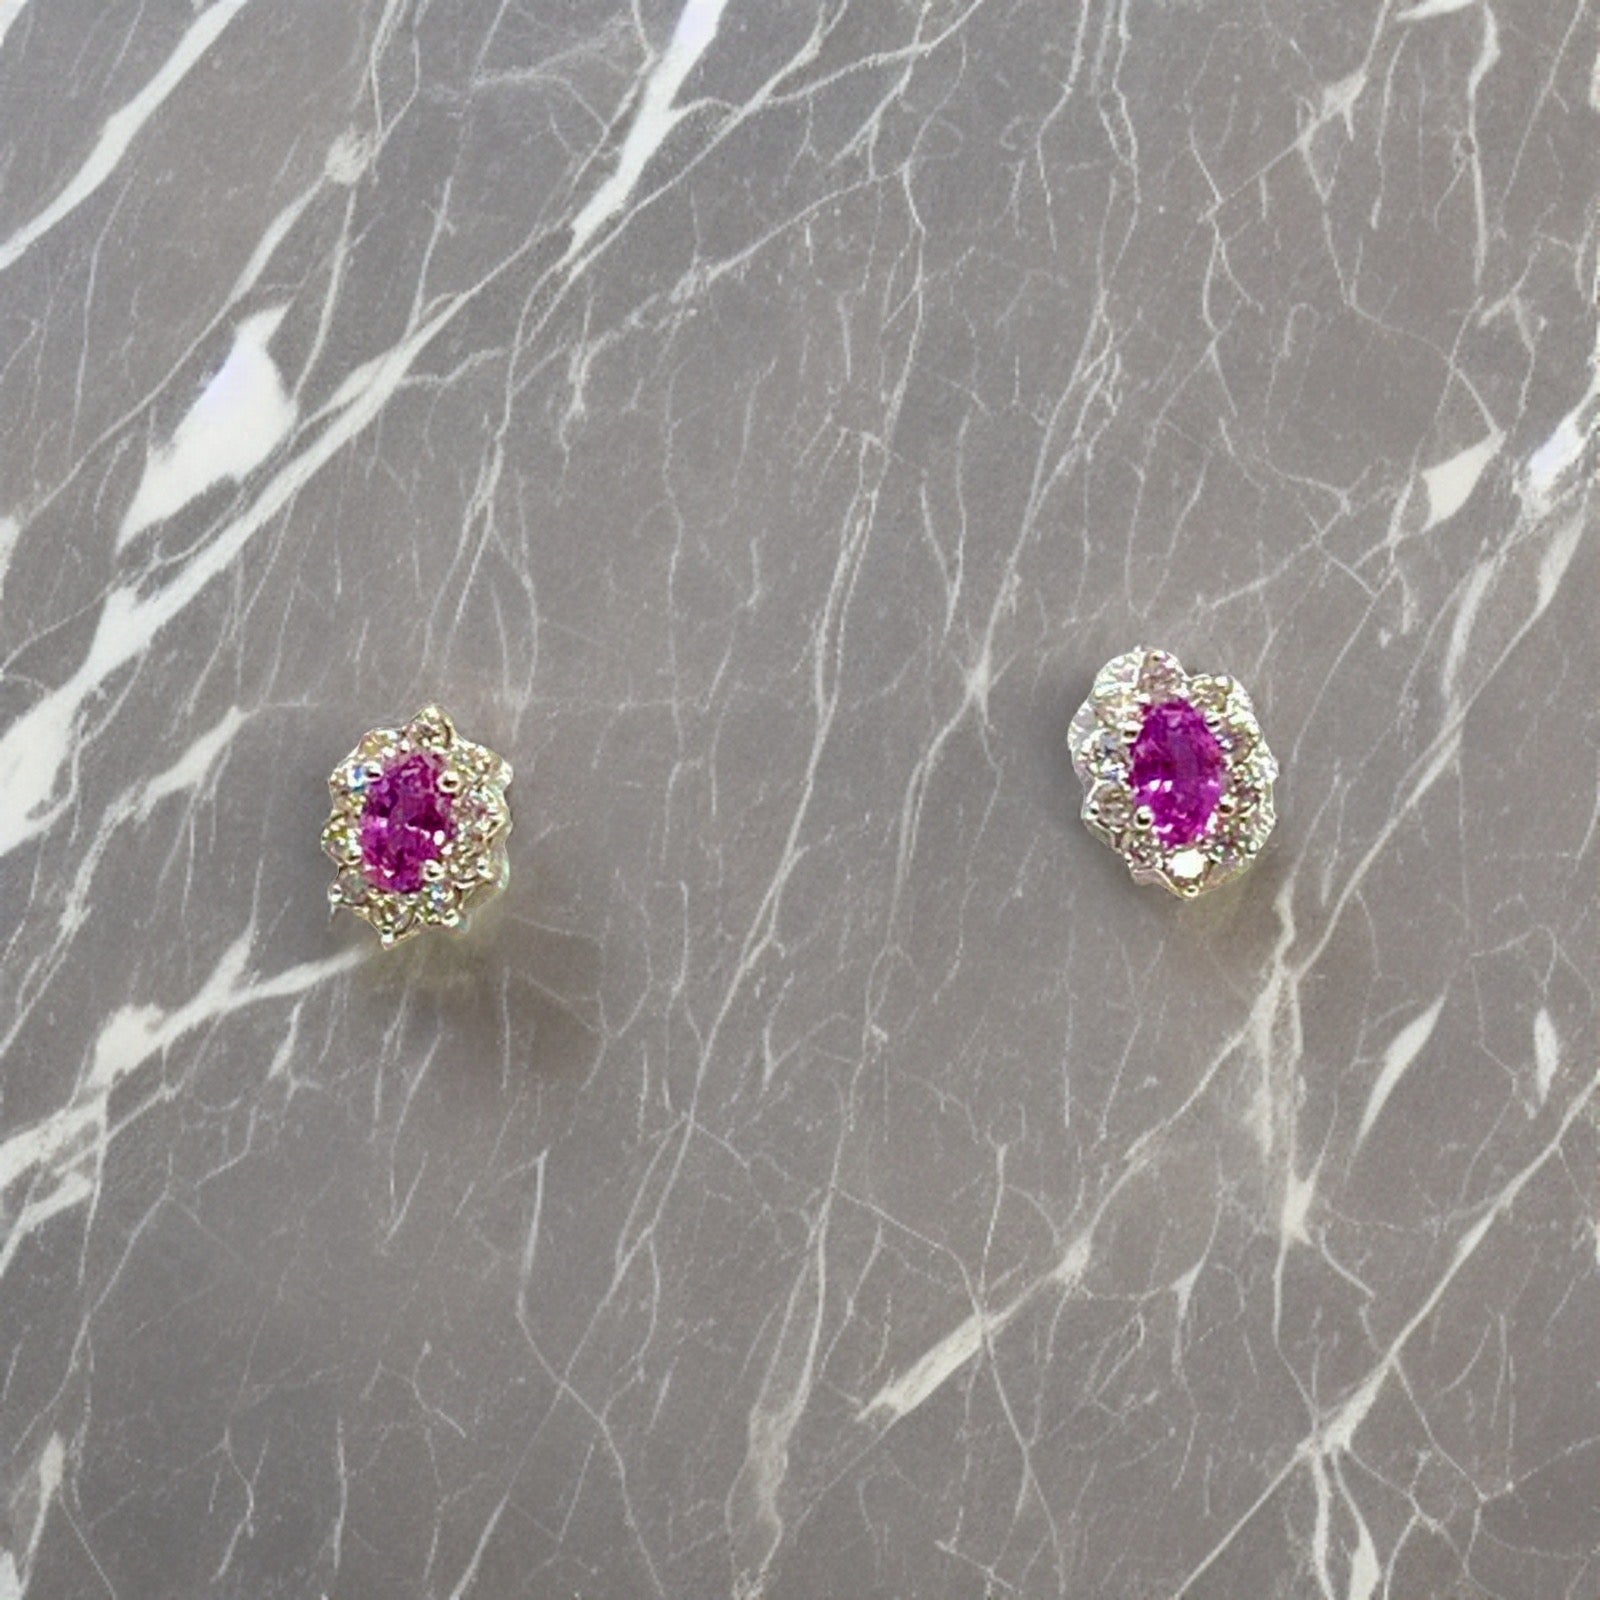 Diamond Sapphire Earrings 18k Gold Stud .90 CTW Certified $2,490 921516 - Certified Fine Jewelry